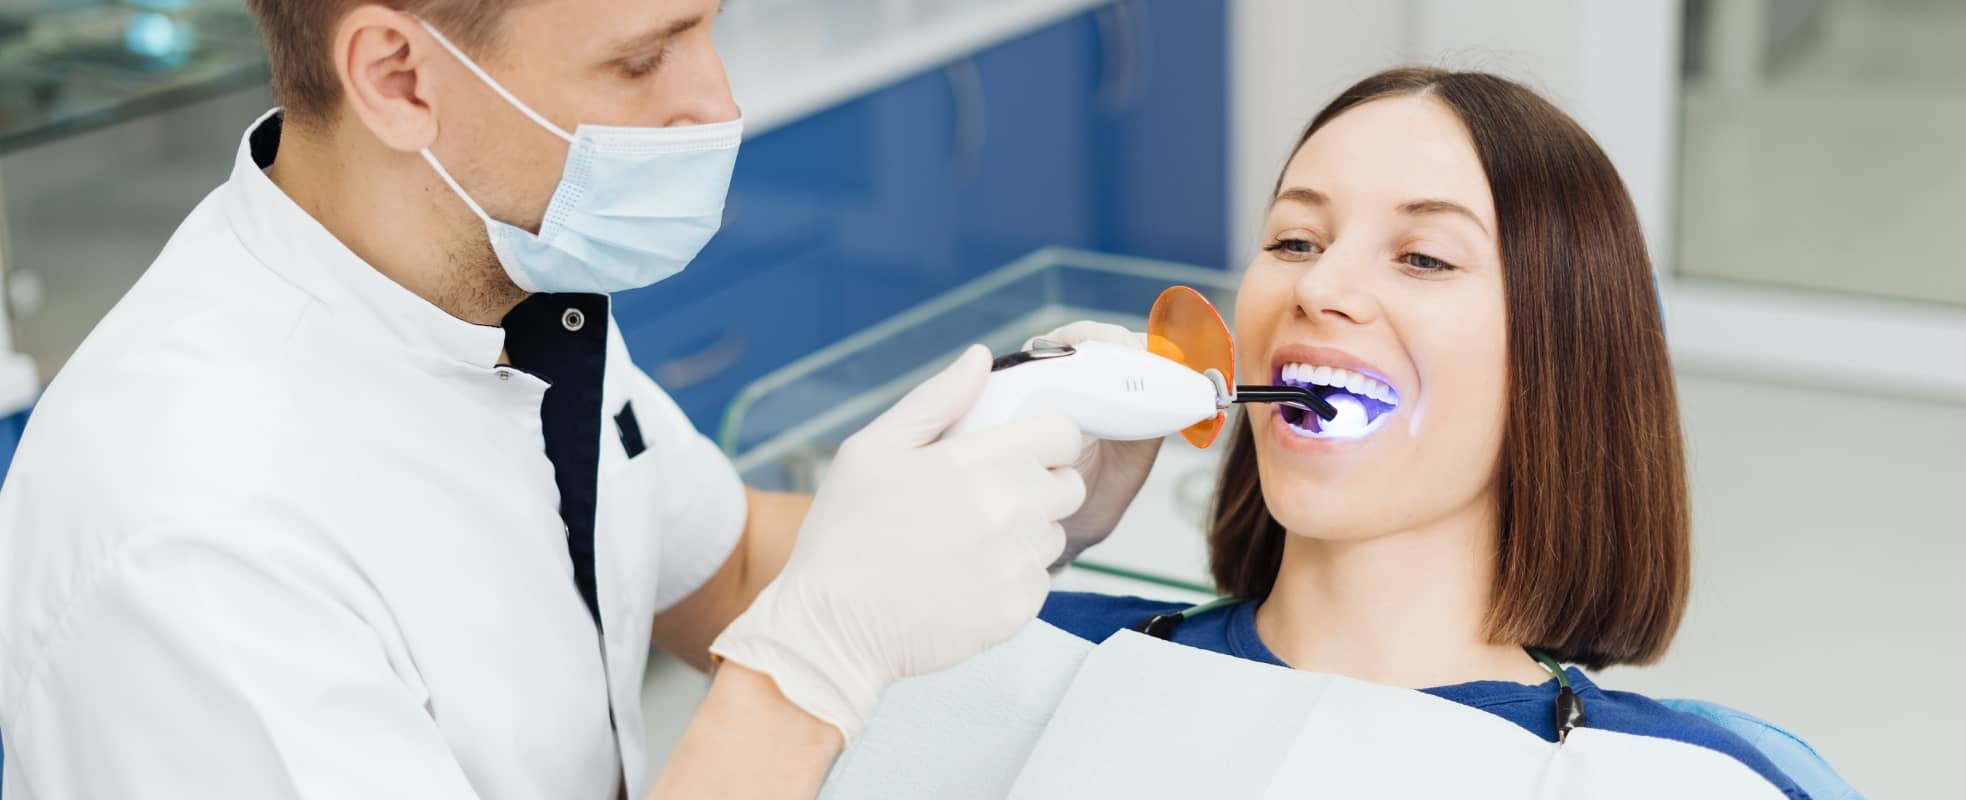 A quoi sert le laser dans le domaine dentaire ? | Dr Elhyani | Paris